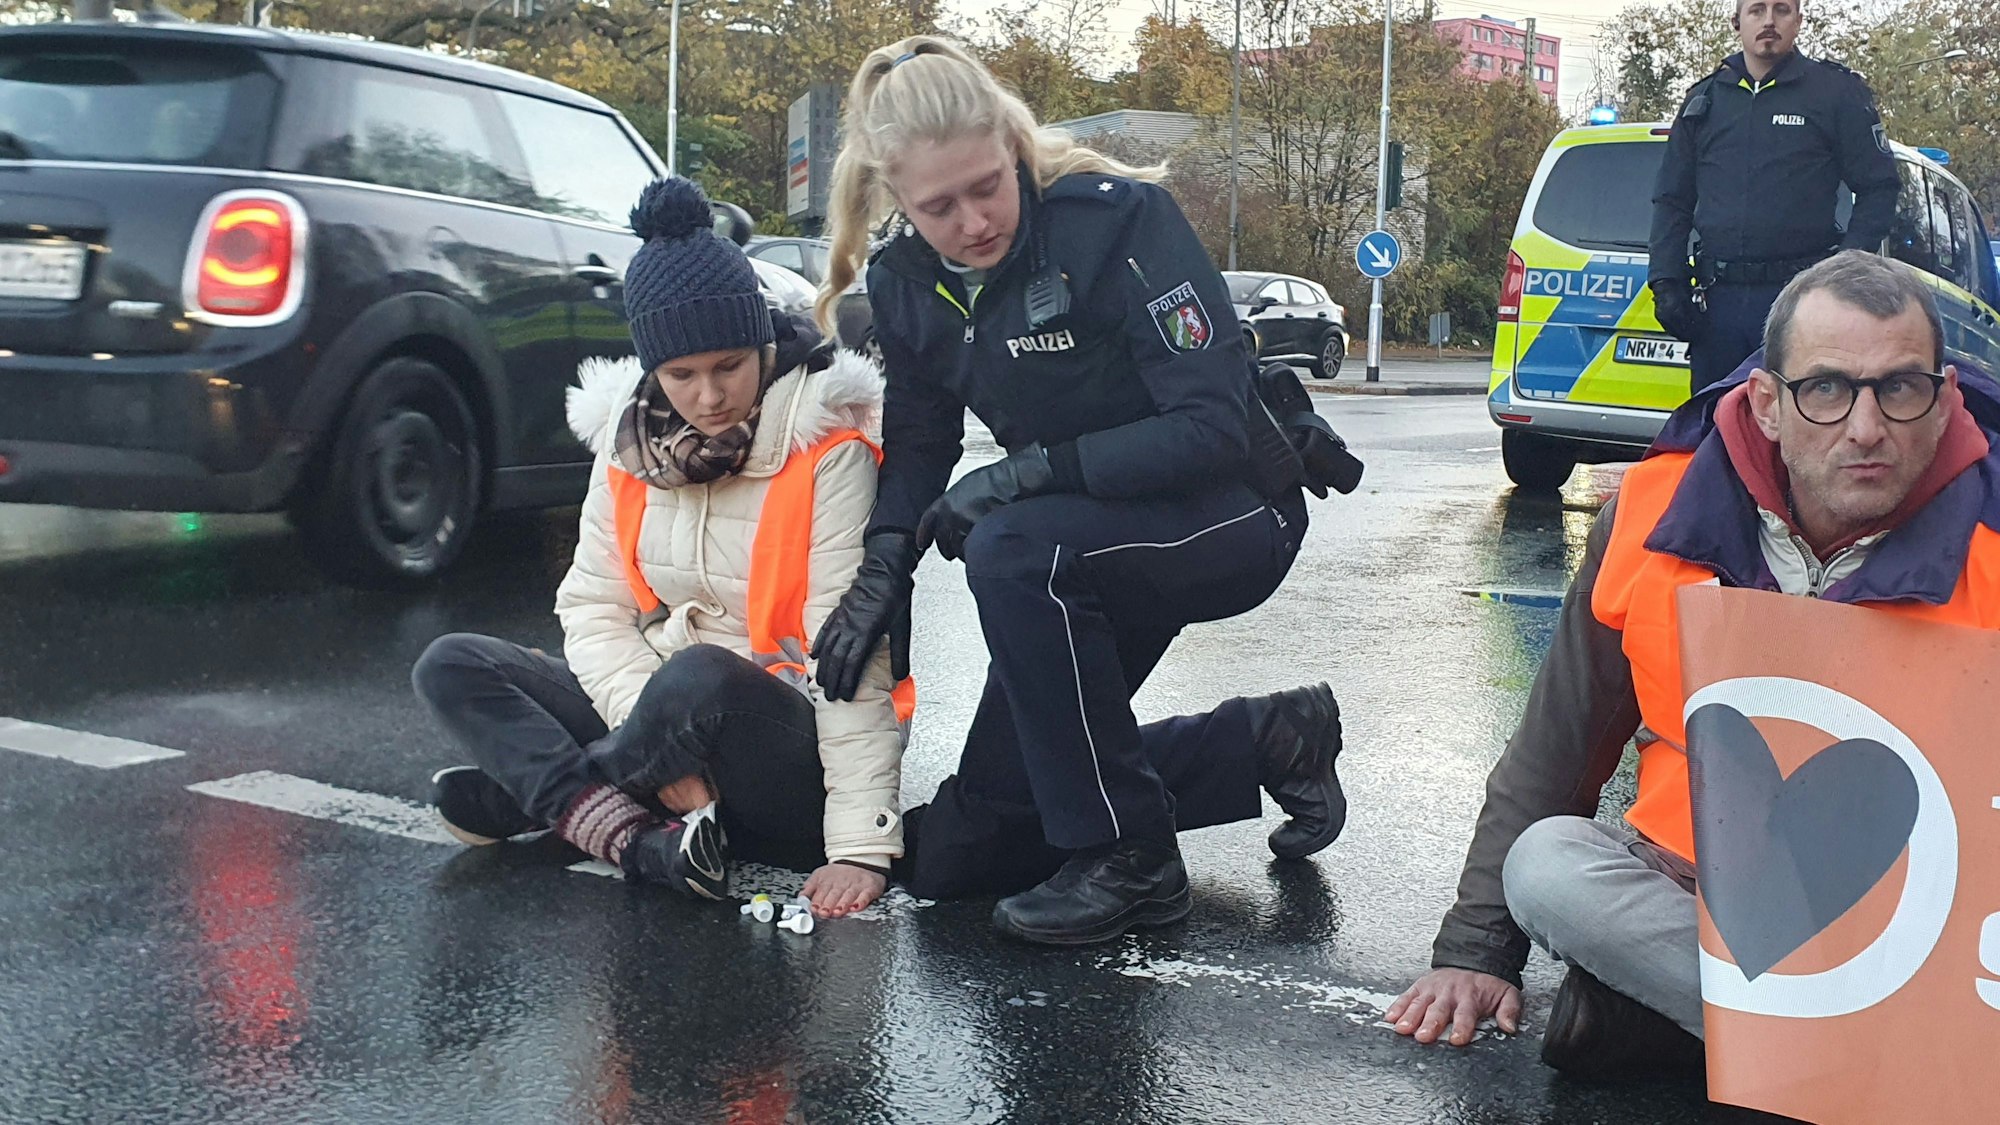 Eine Polizistin kniet auf einer Straße neben zwei Klimaschutzaktivisten.